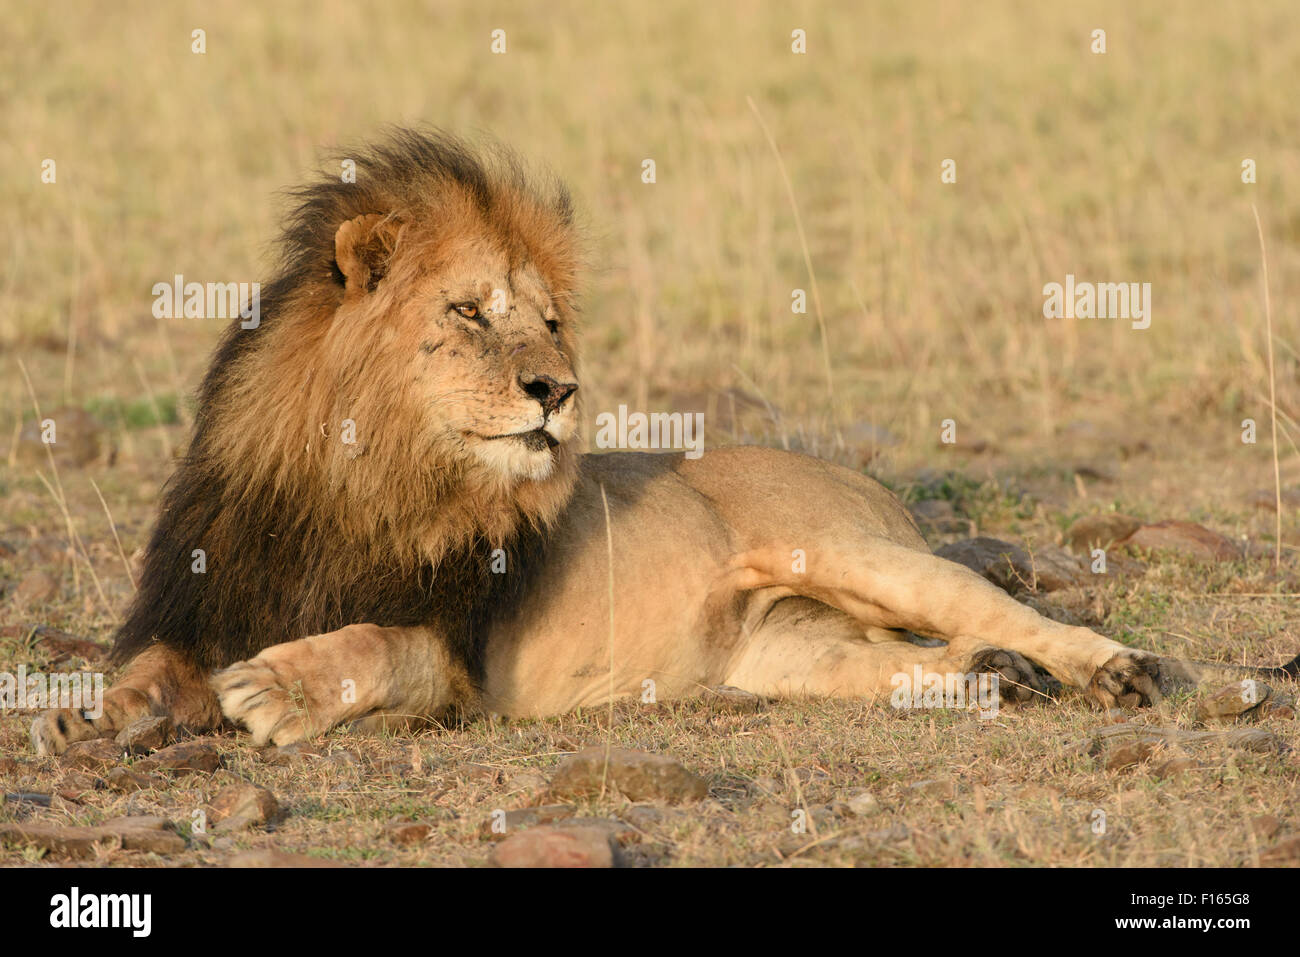 Male lion (Panthera leo) avec une crinière sombre dans la lumière du matin, la crinière d'un lion noir, Maasai Mara National Reserve, comté de Narok Banque D'Images